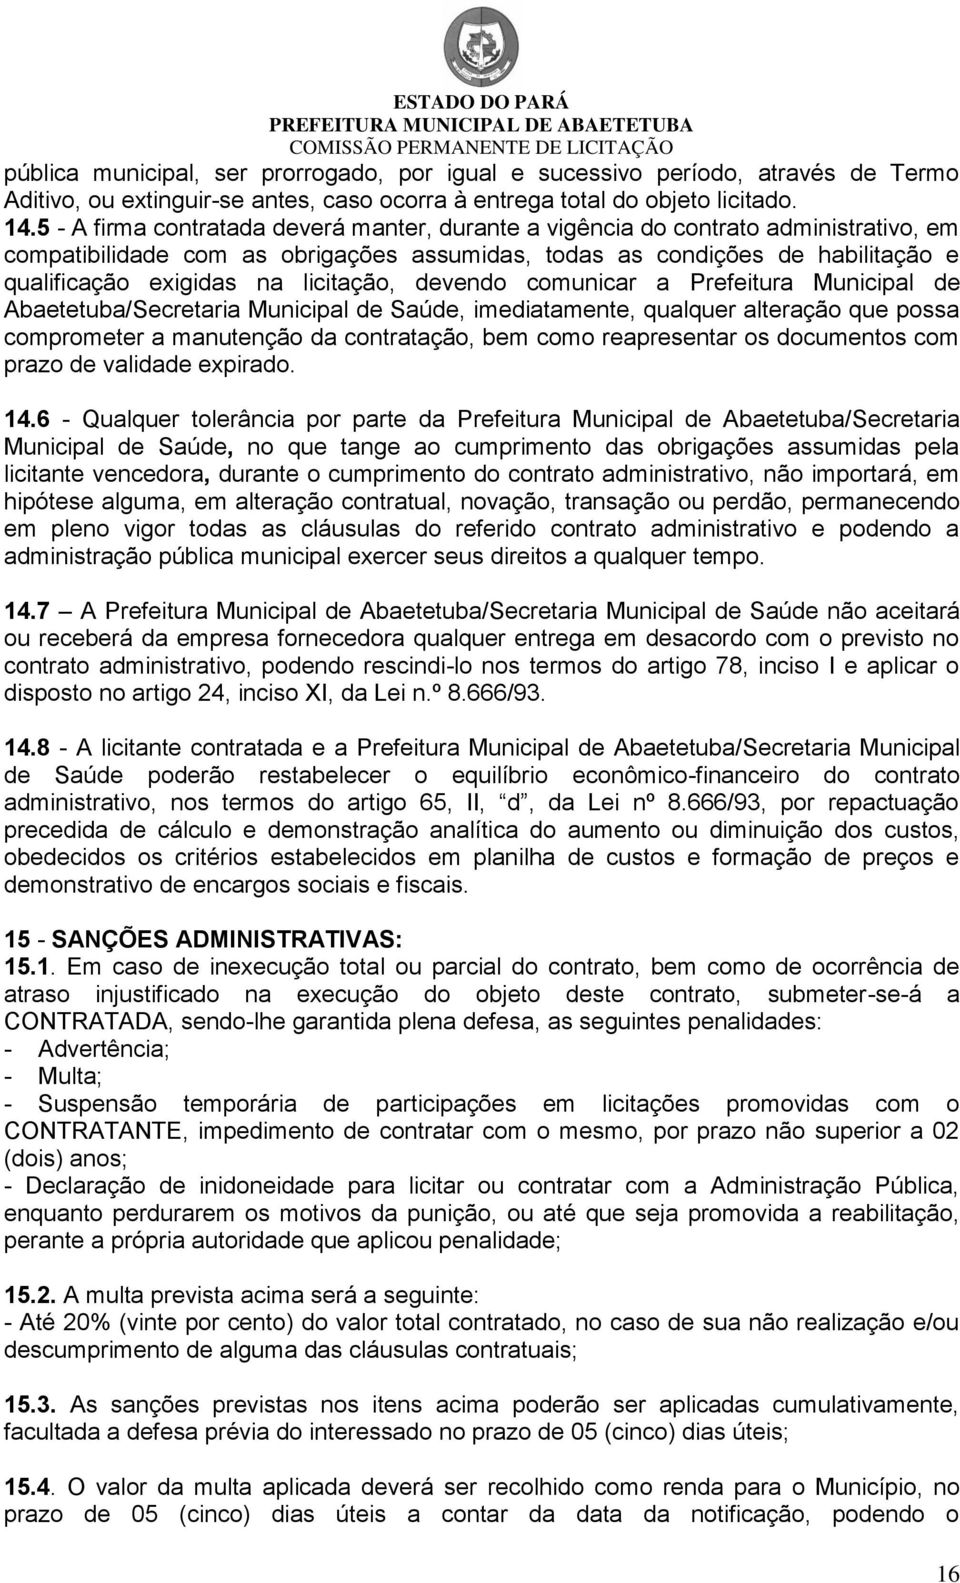 licitação, devendo comunicar a Prefeitura Municipal de Abaetetuba/Secretaria Municipal de Saúde, imediatamente, qualquer alteração que possa comprometer a manutenção da contratação, bem como